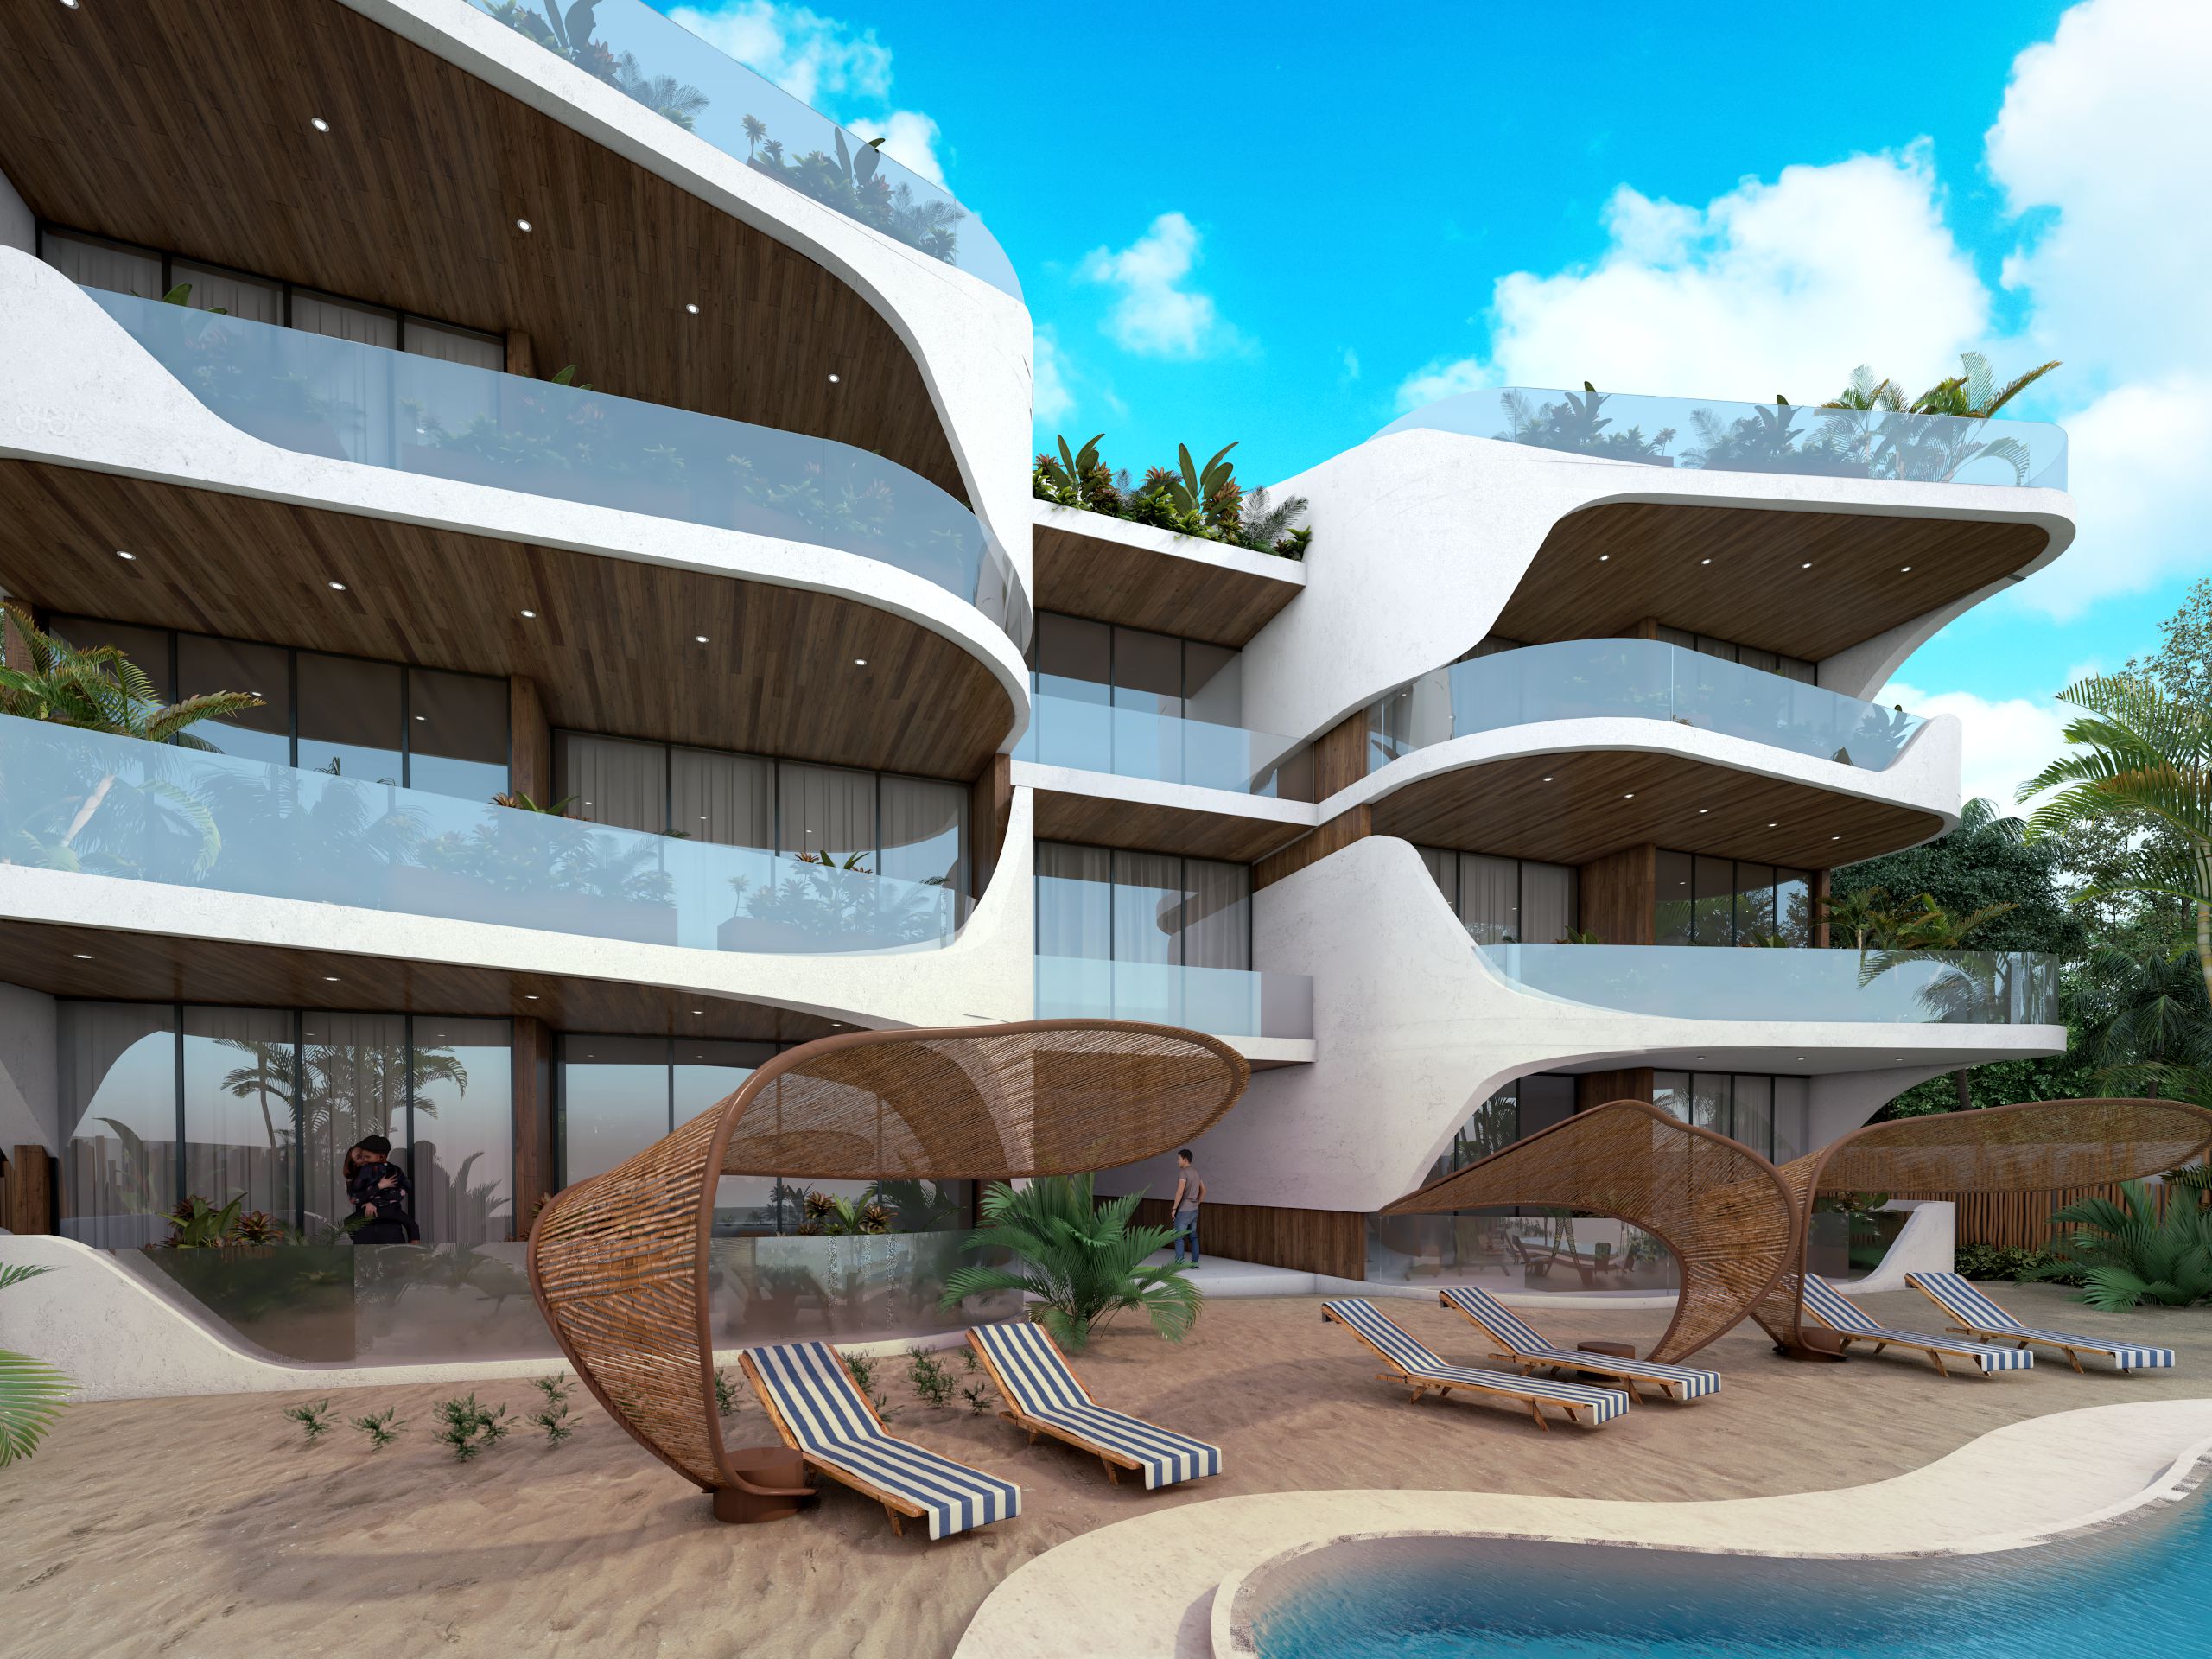 b oceanfront real estate in tulum tankah 52 pool